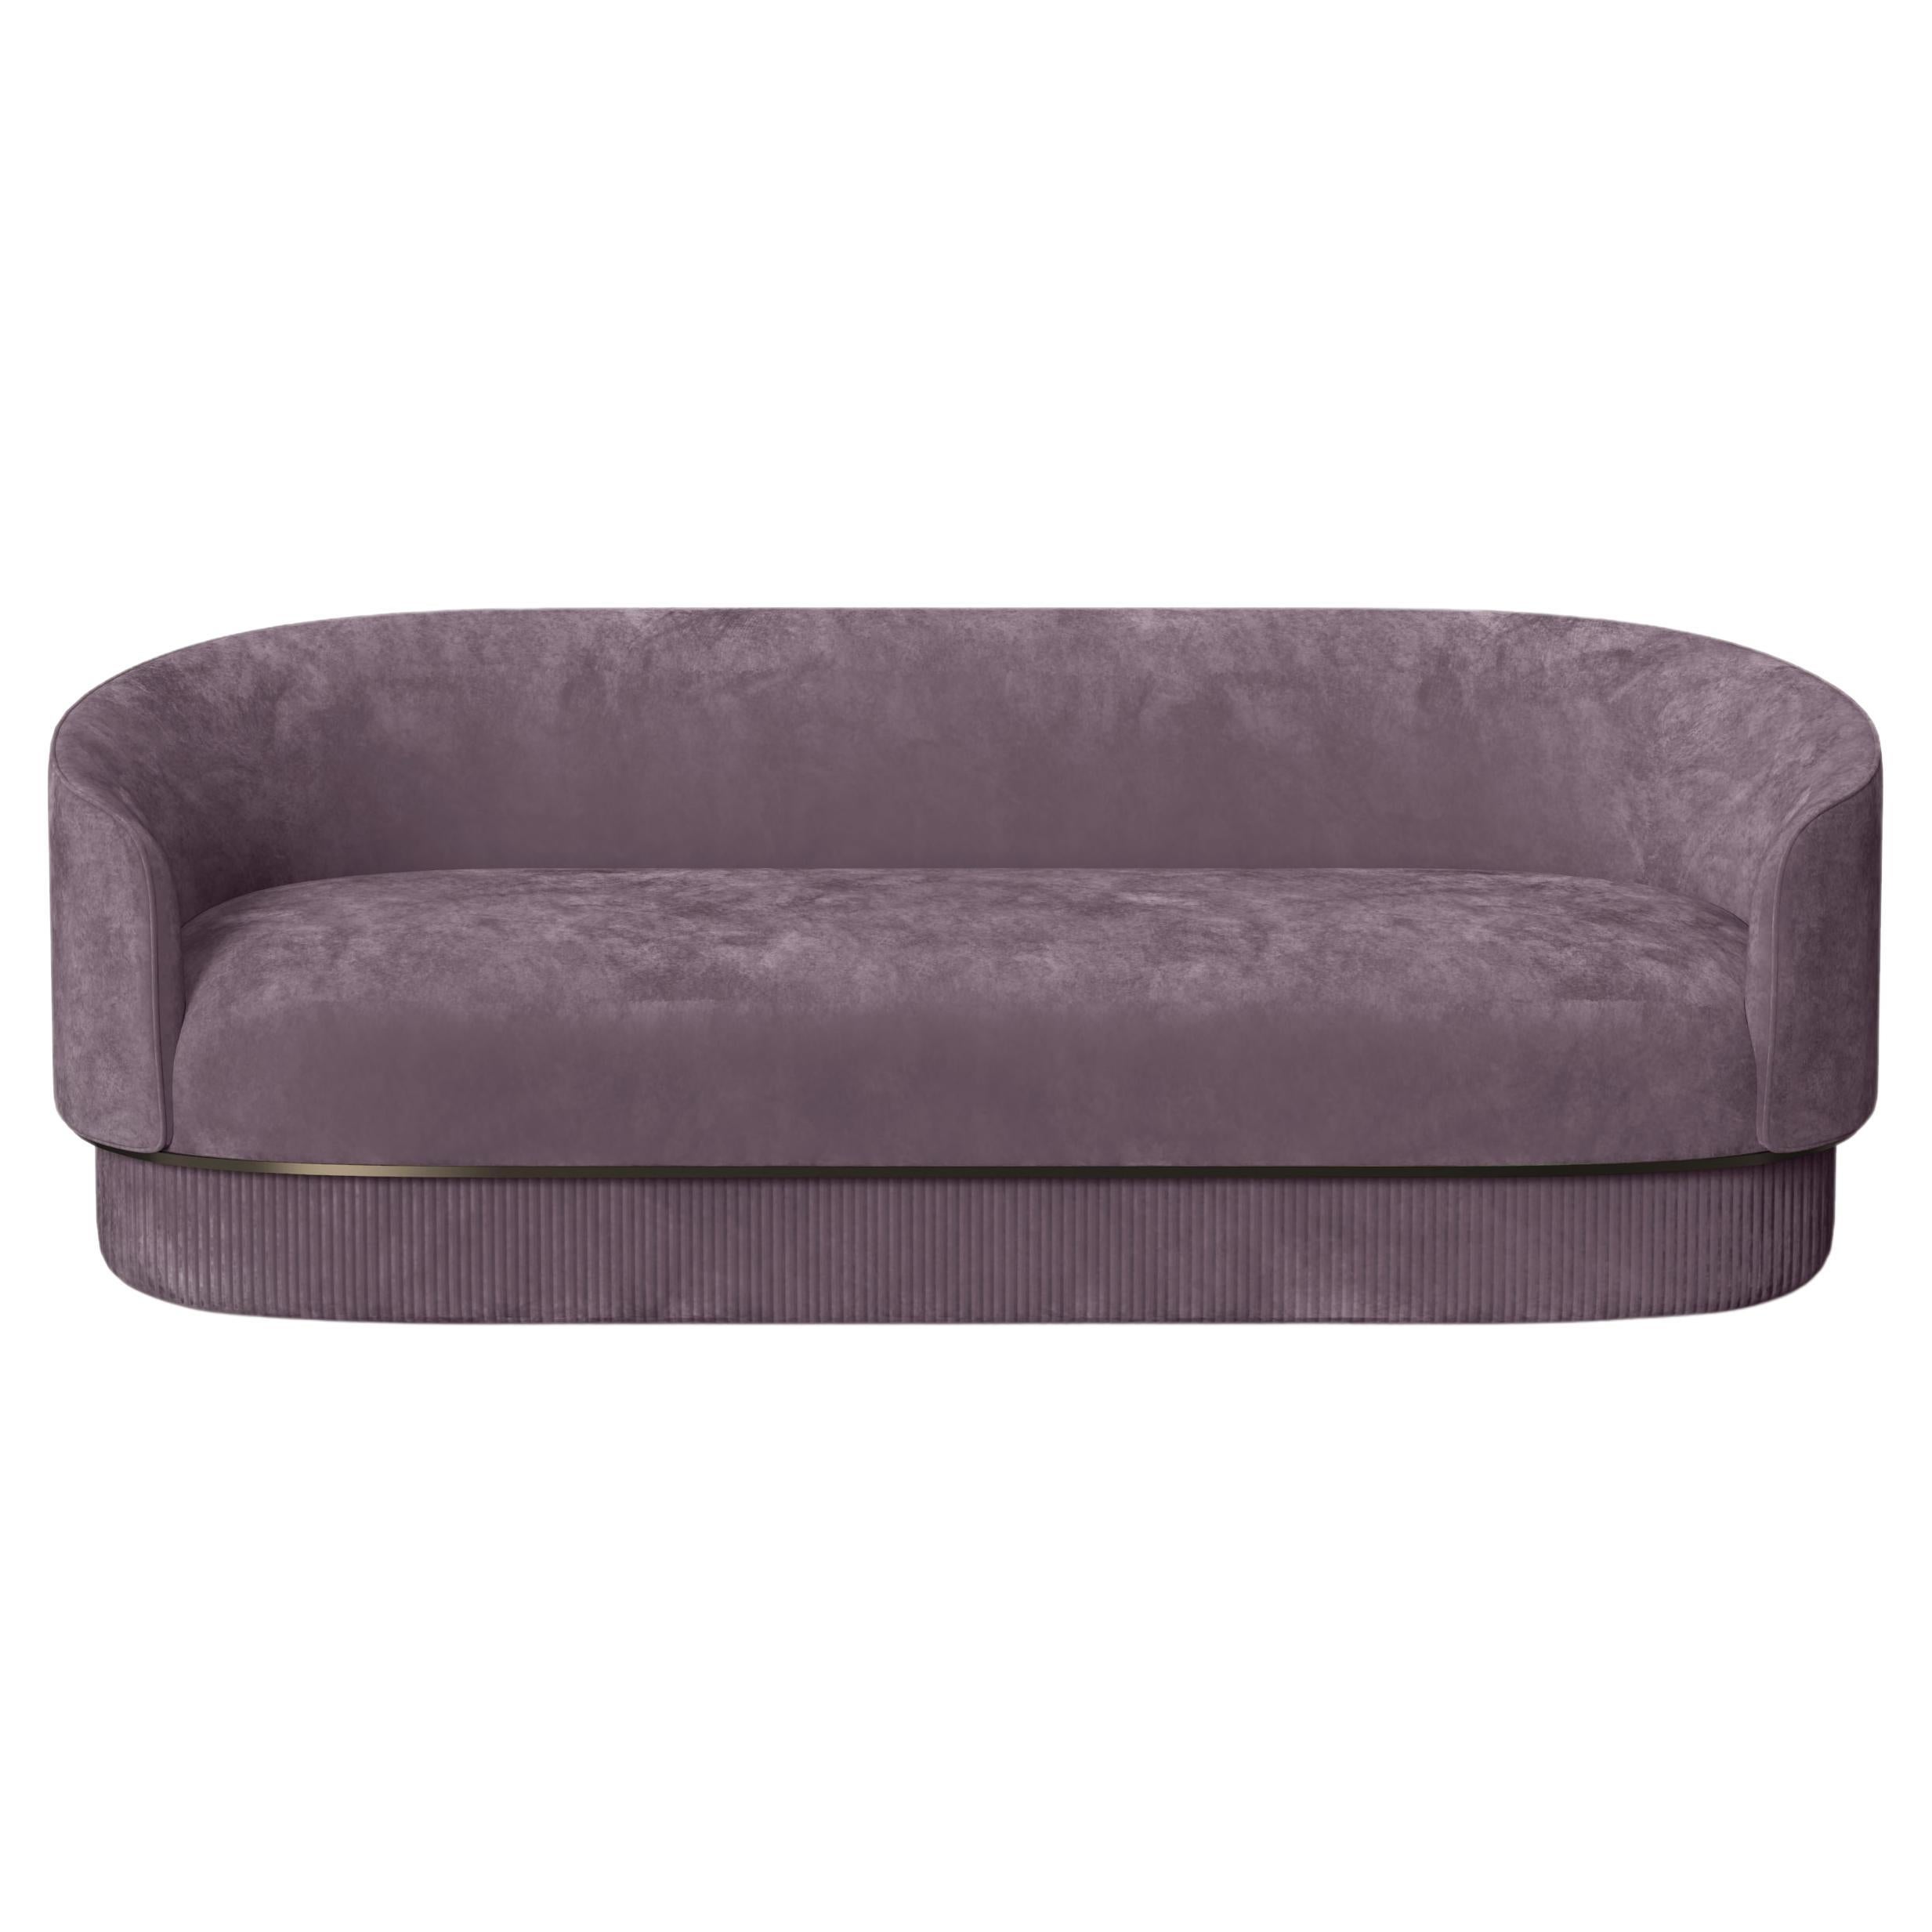 Modern Gentle Sofa in Purple Velvet and Bronze Metal